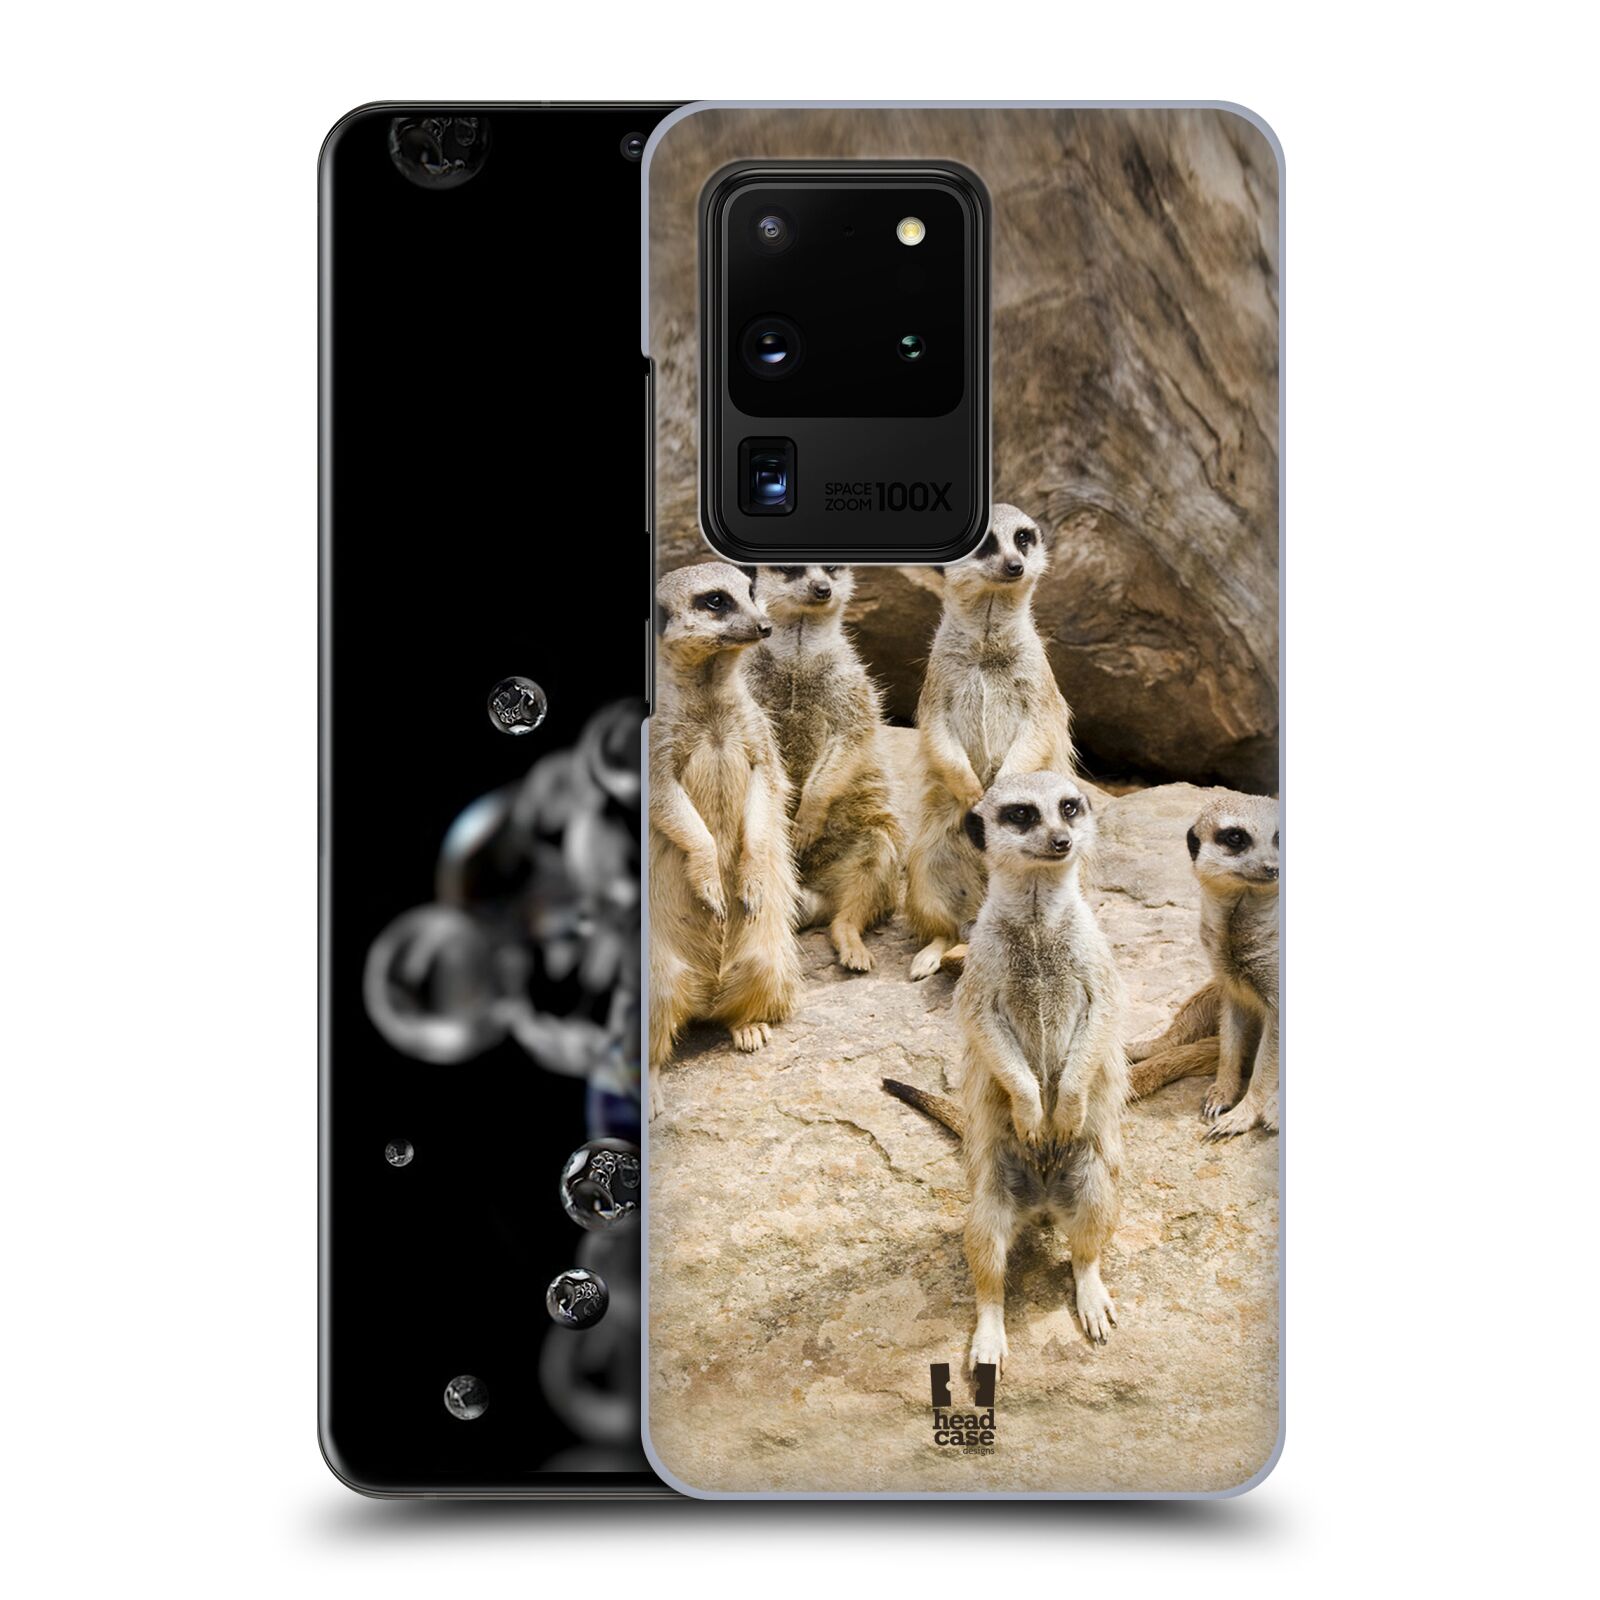 Zadní obal pro mobil Samsung Galaxy S20 ULTRA - HEAD CASE - Svět zvířat roztomilé surikaty